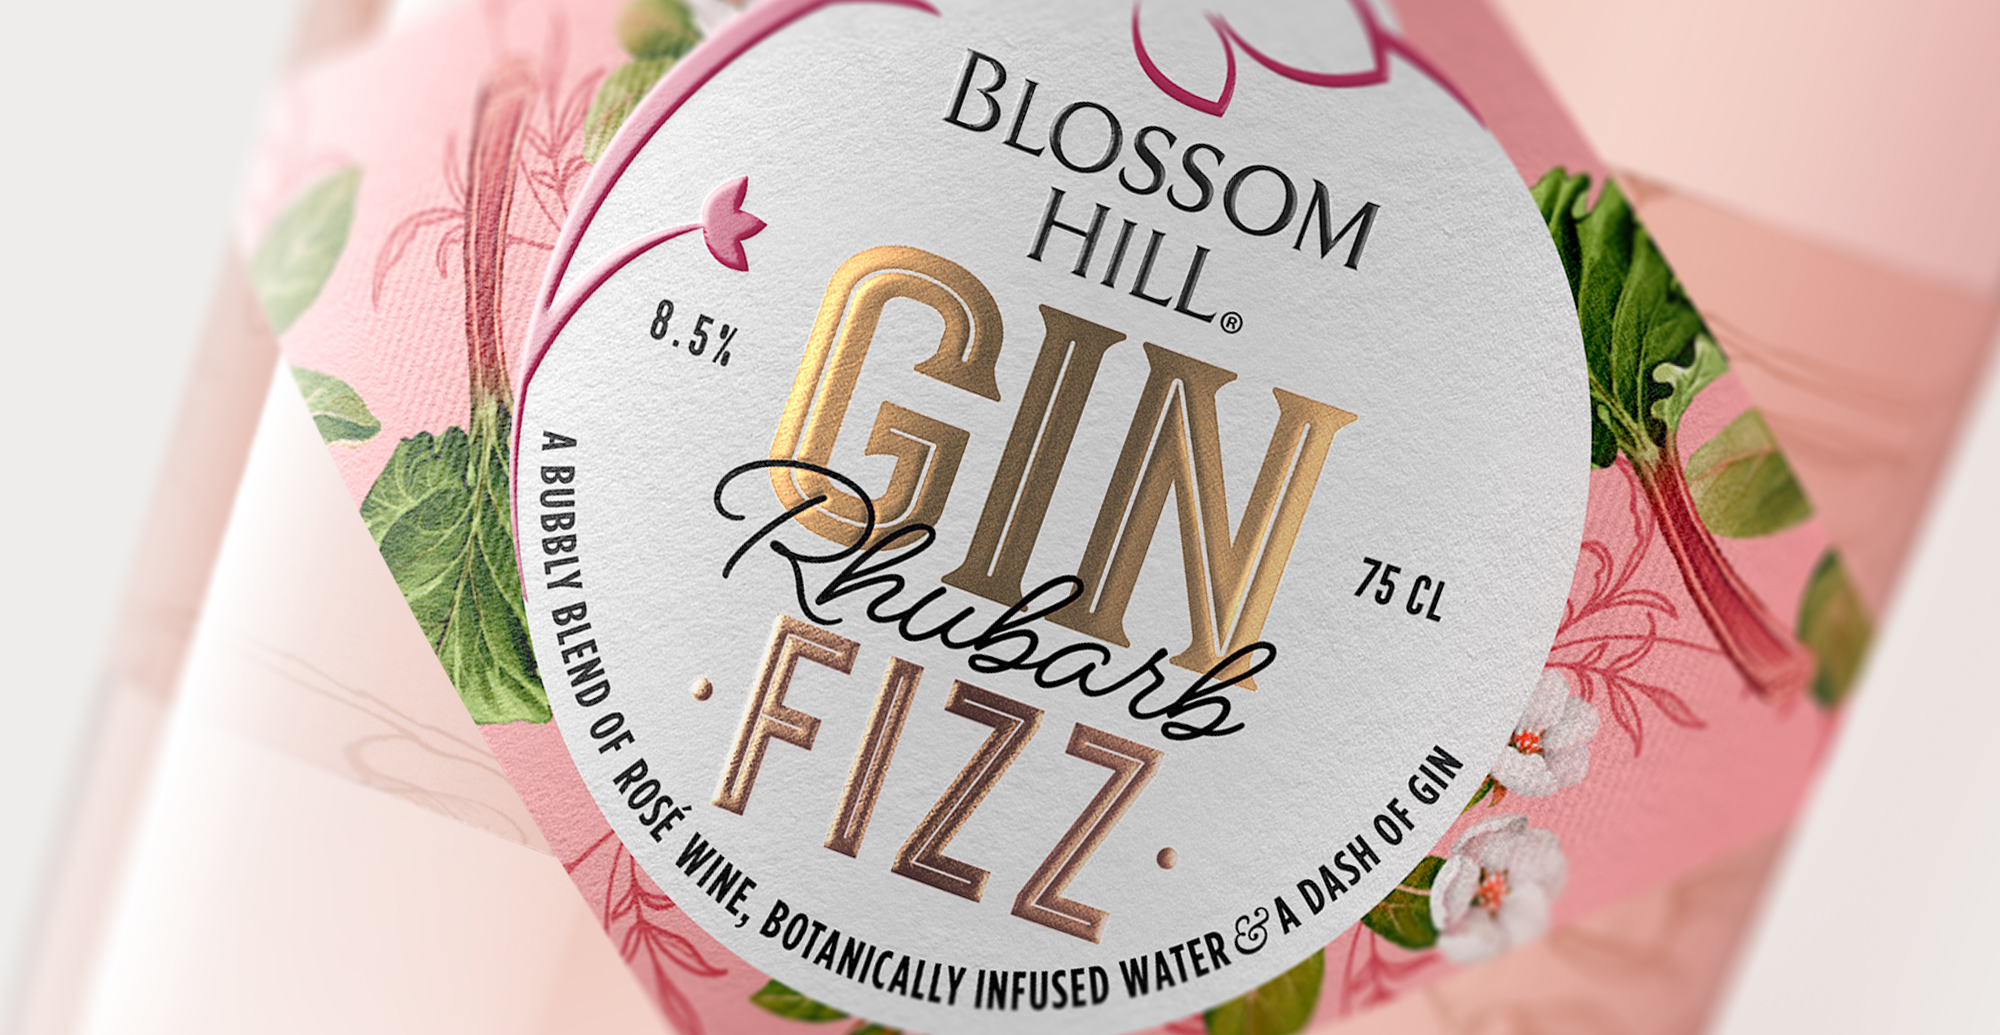 Blossom Hill Gin Fizz Design Created by Design Happy